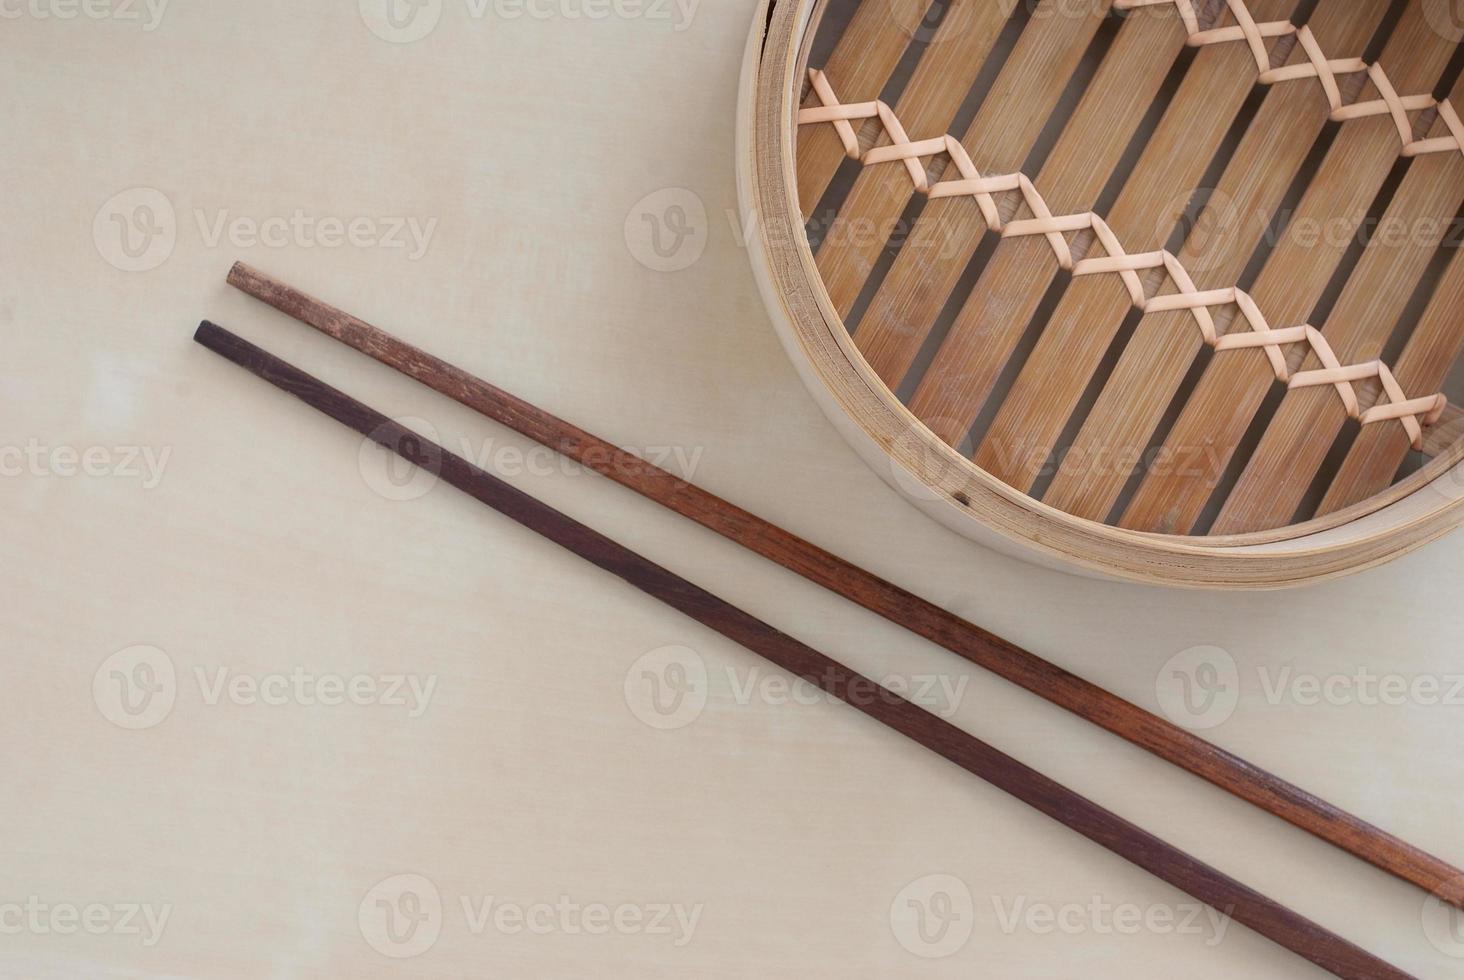 vapor de bambu tradicional foto